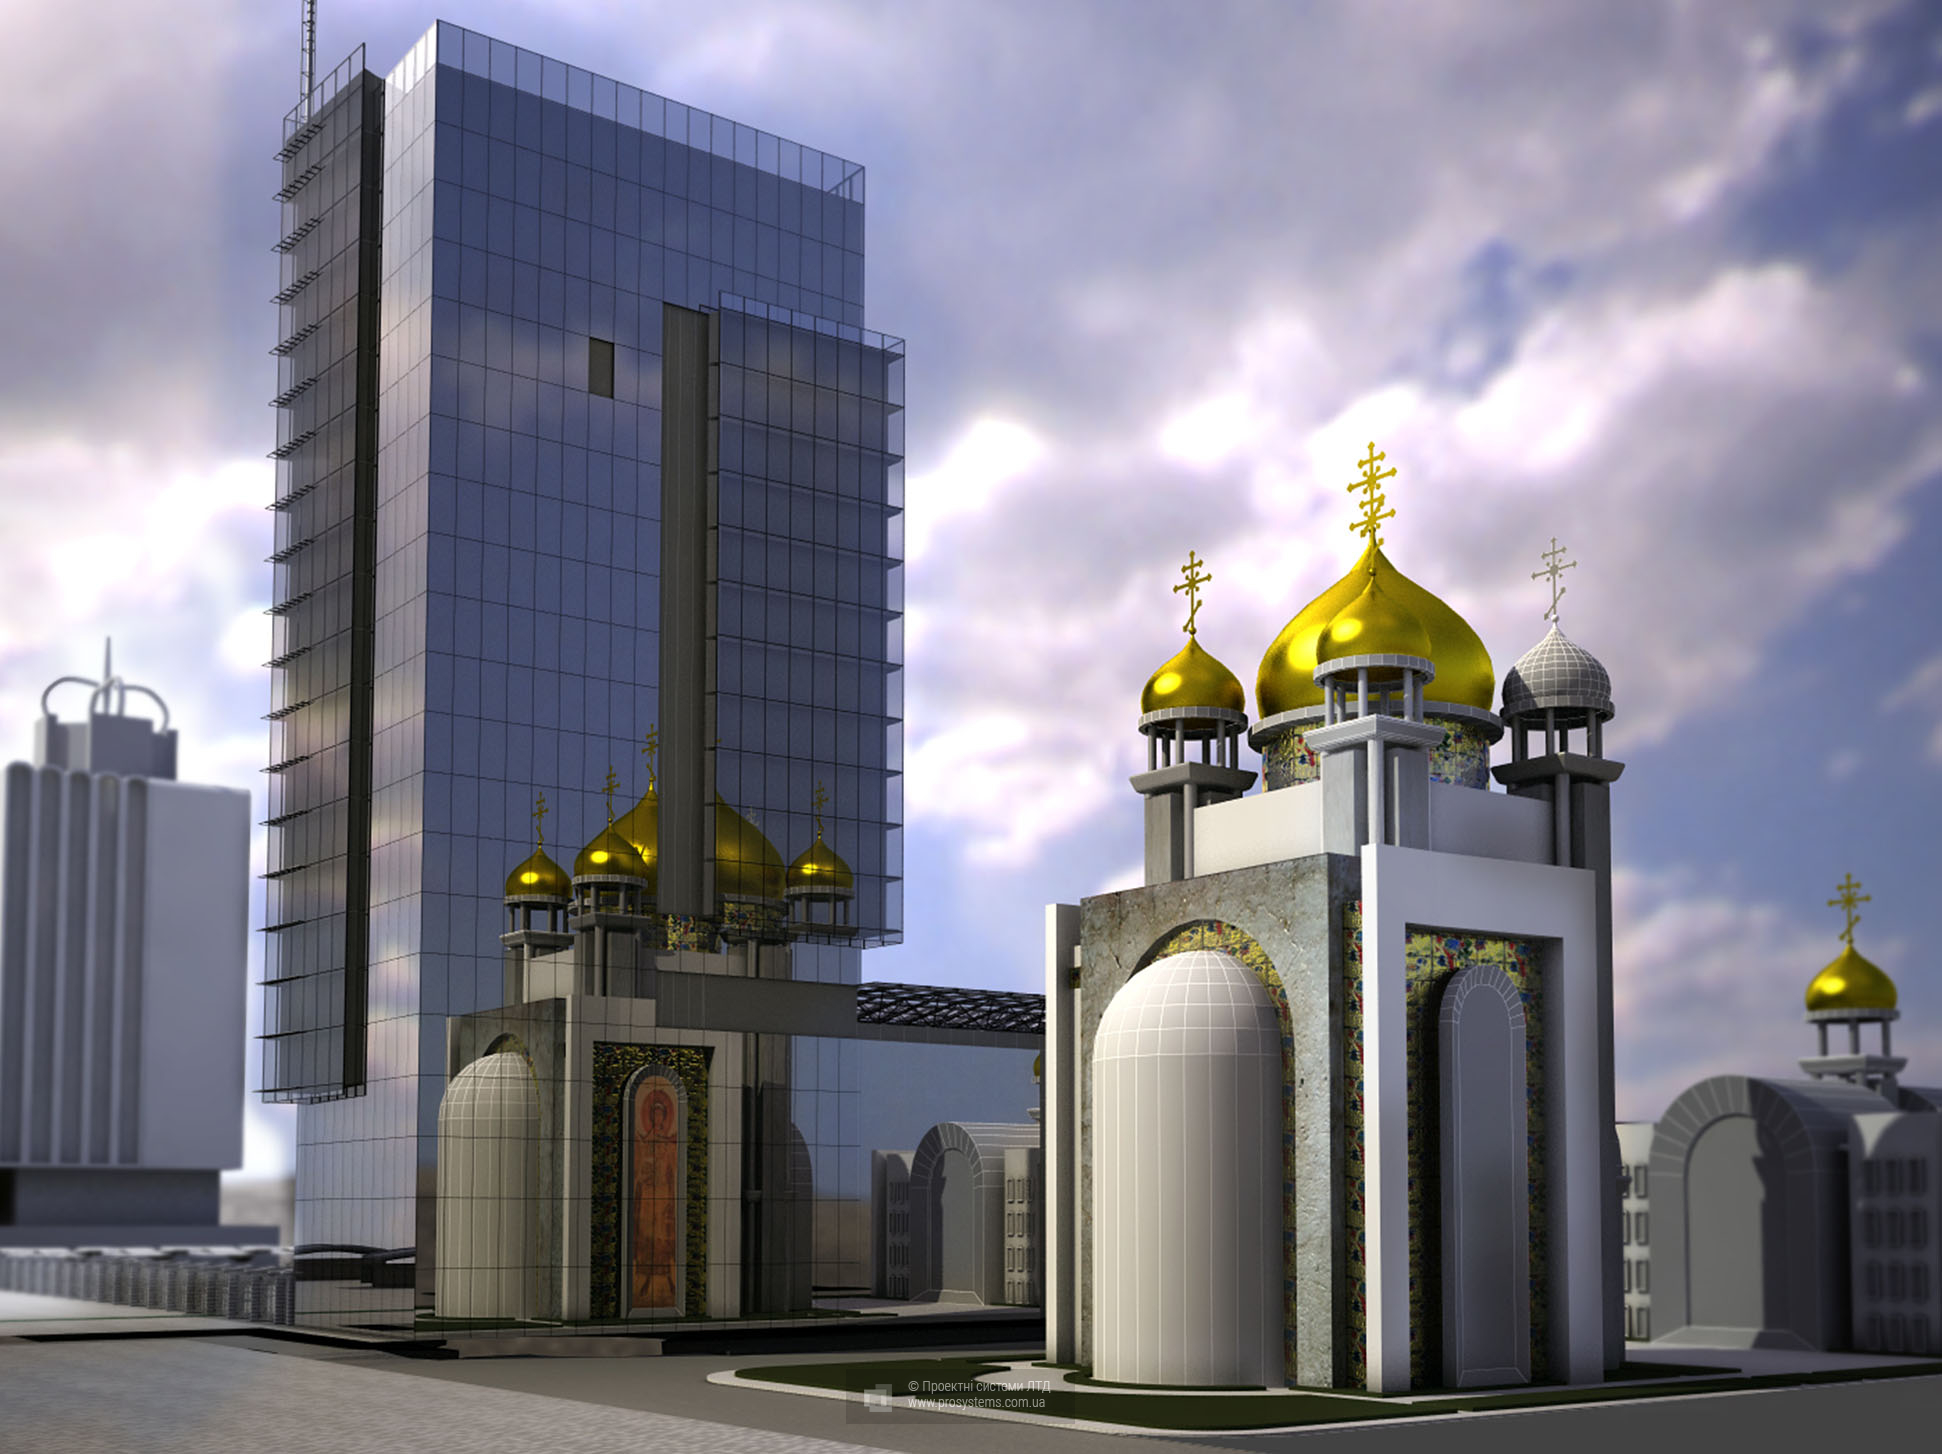 Православний храм